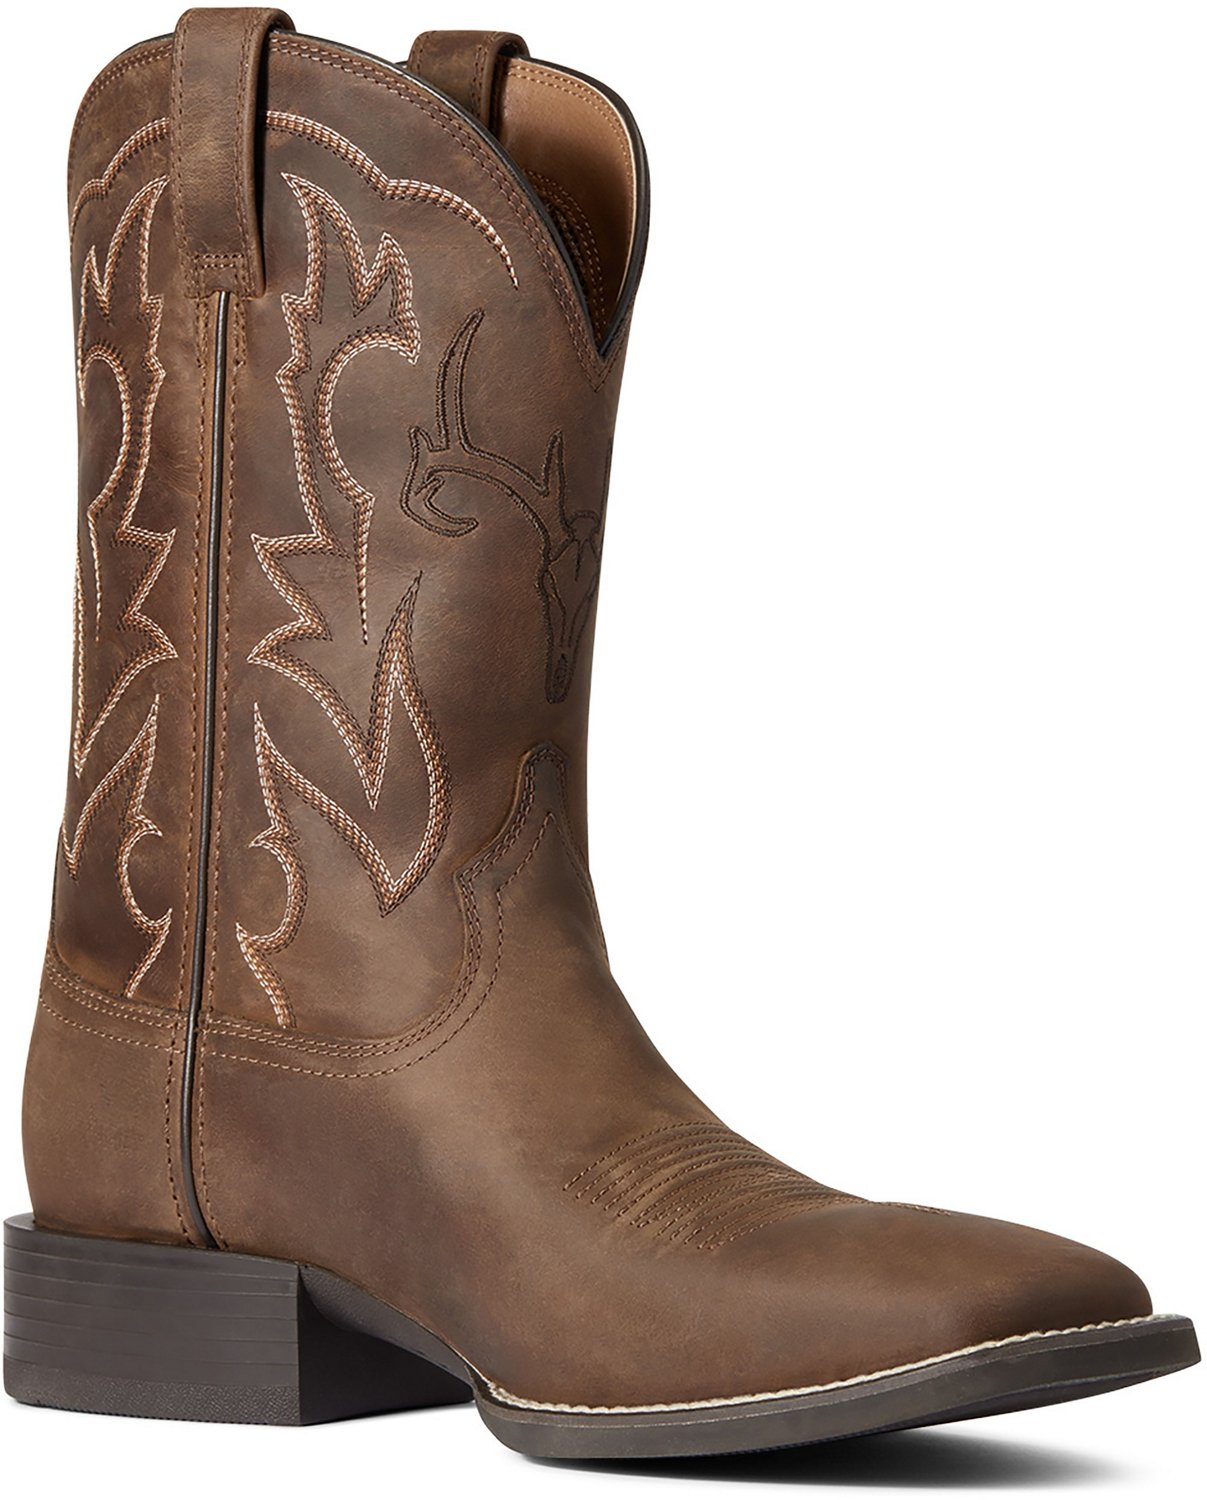 Ariat Men's Sport Outdoor Western Cowboy Boots